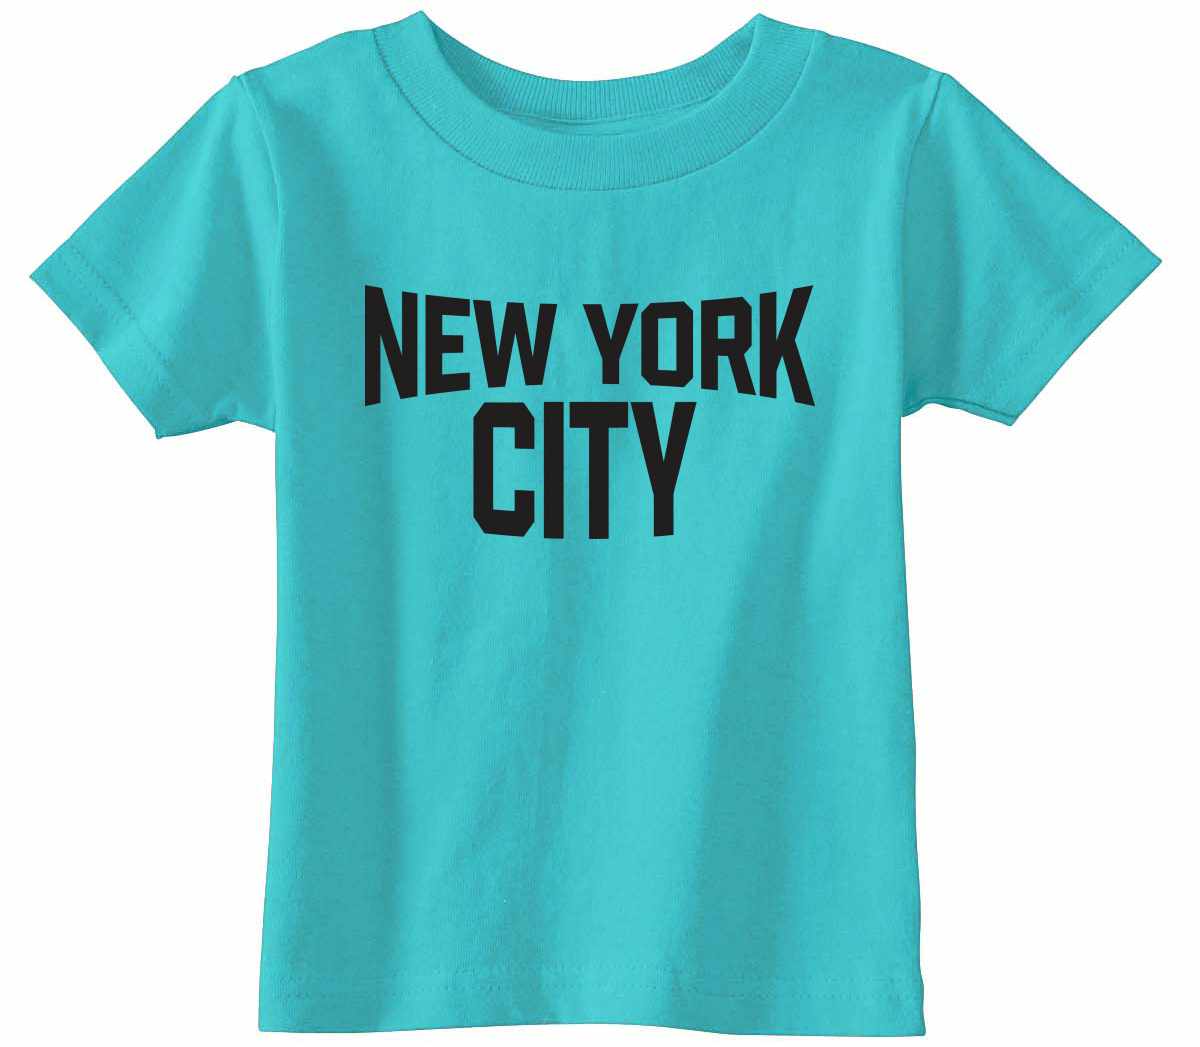 New York City on Infant-Toddler T-Shirt (#1194-7)